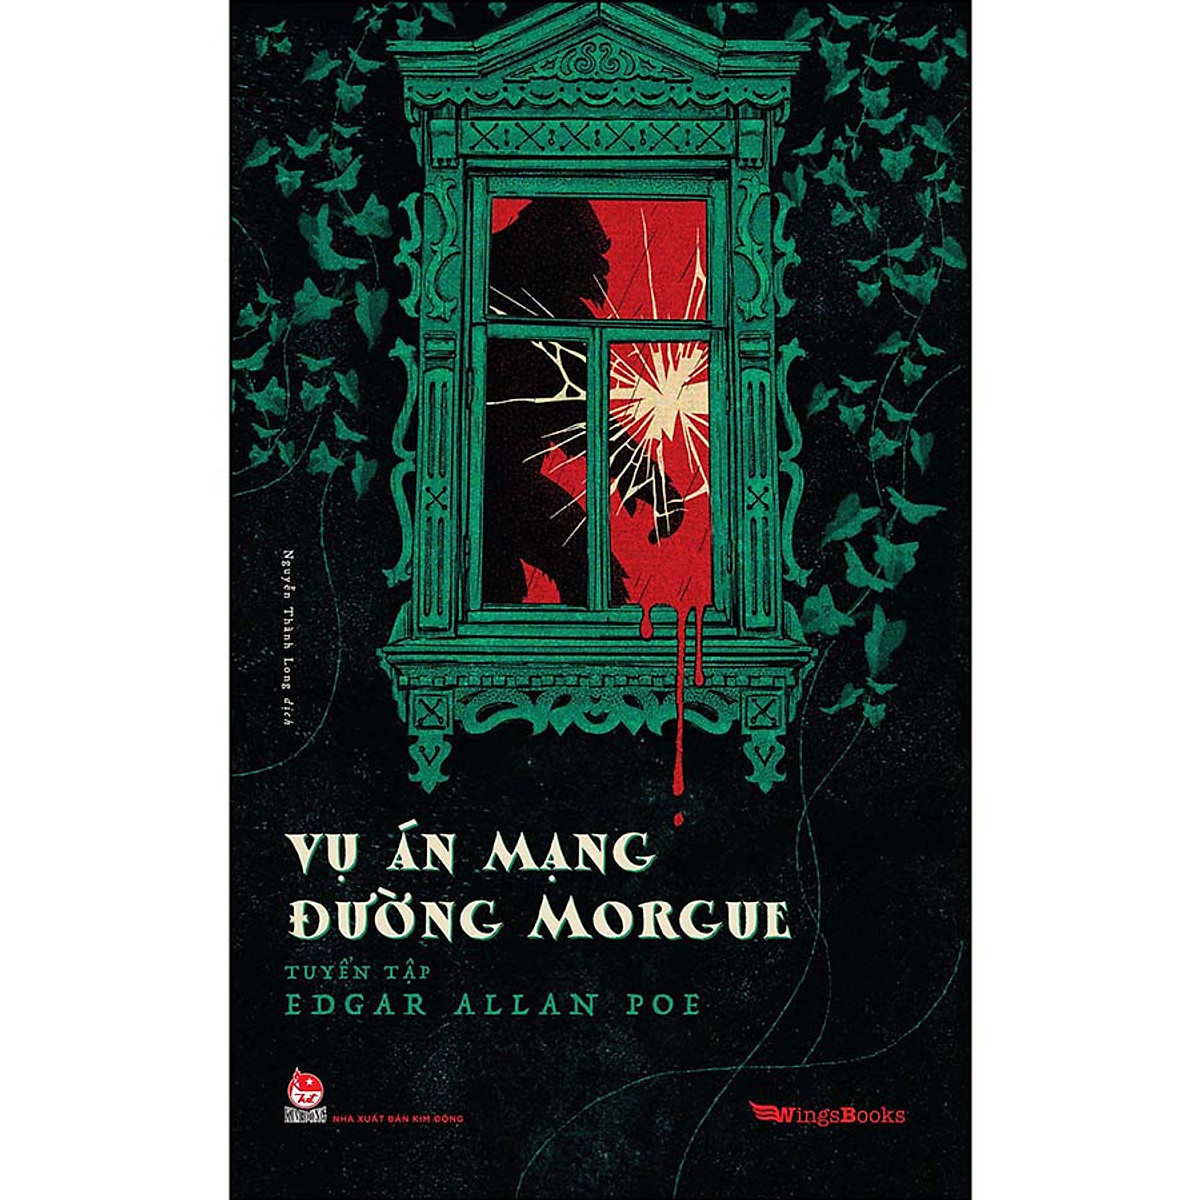 Combo Tuyển Tập Edgar Allan Poe: Vụ Án Mạng Đường Morgue + Con Mèo Đen